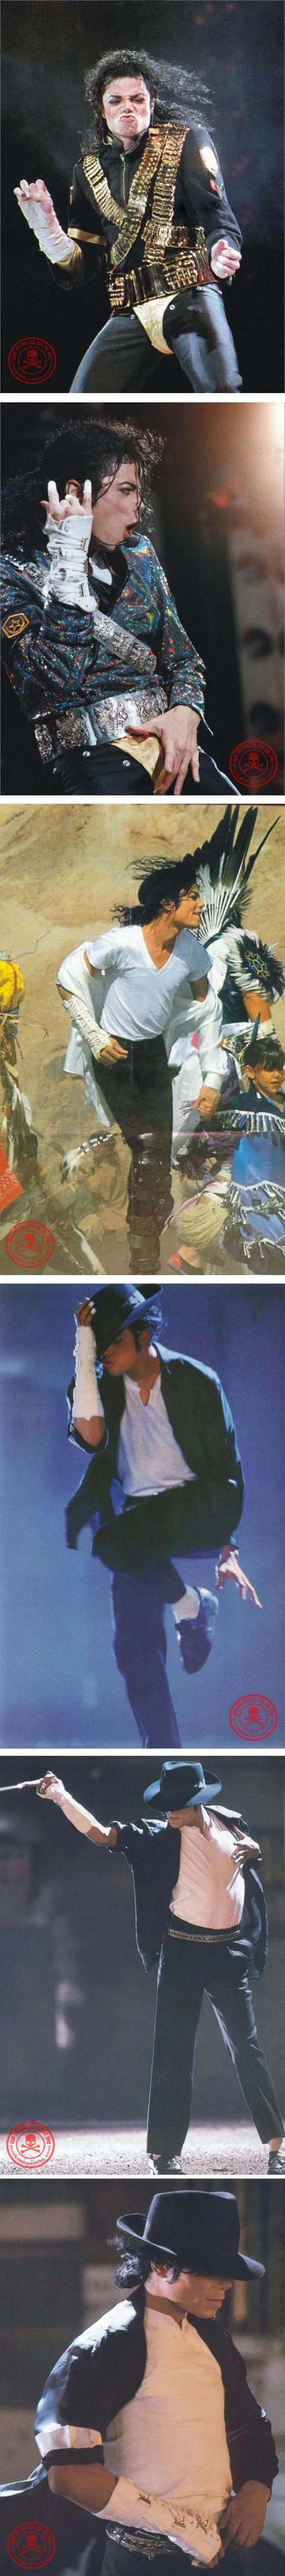 2 шт. панк Рок концертный МД Майкл Джексон классическая коллекция хлопок белая задняя подвязка перчатки по локоть